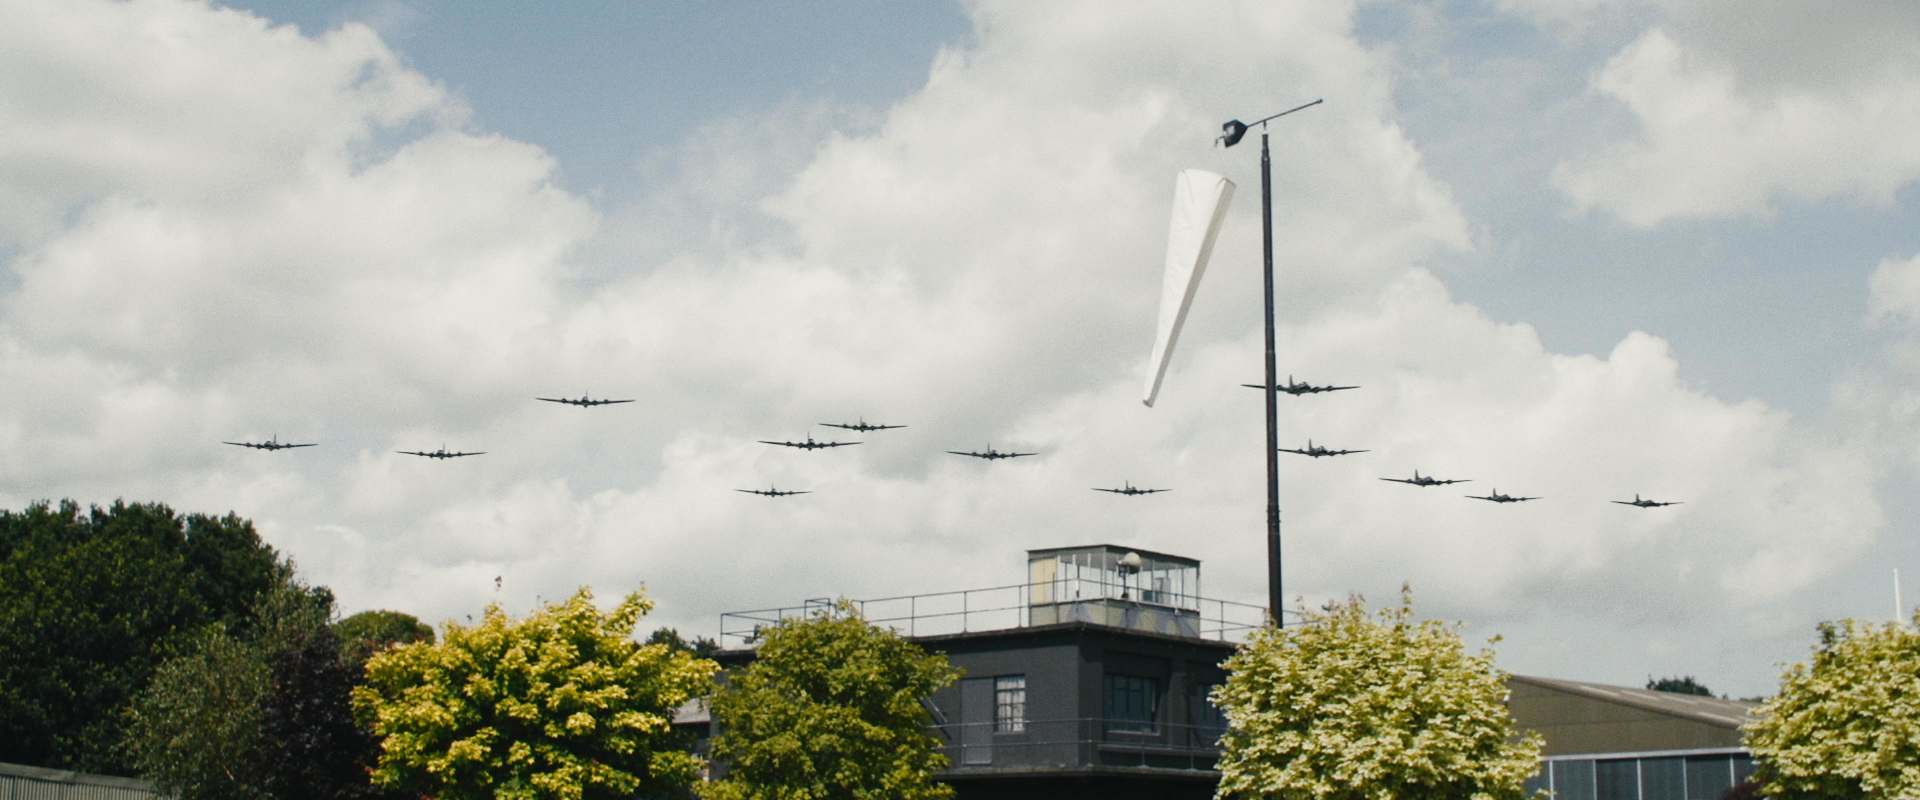 Spitfire Over Berlin background 1